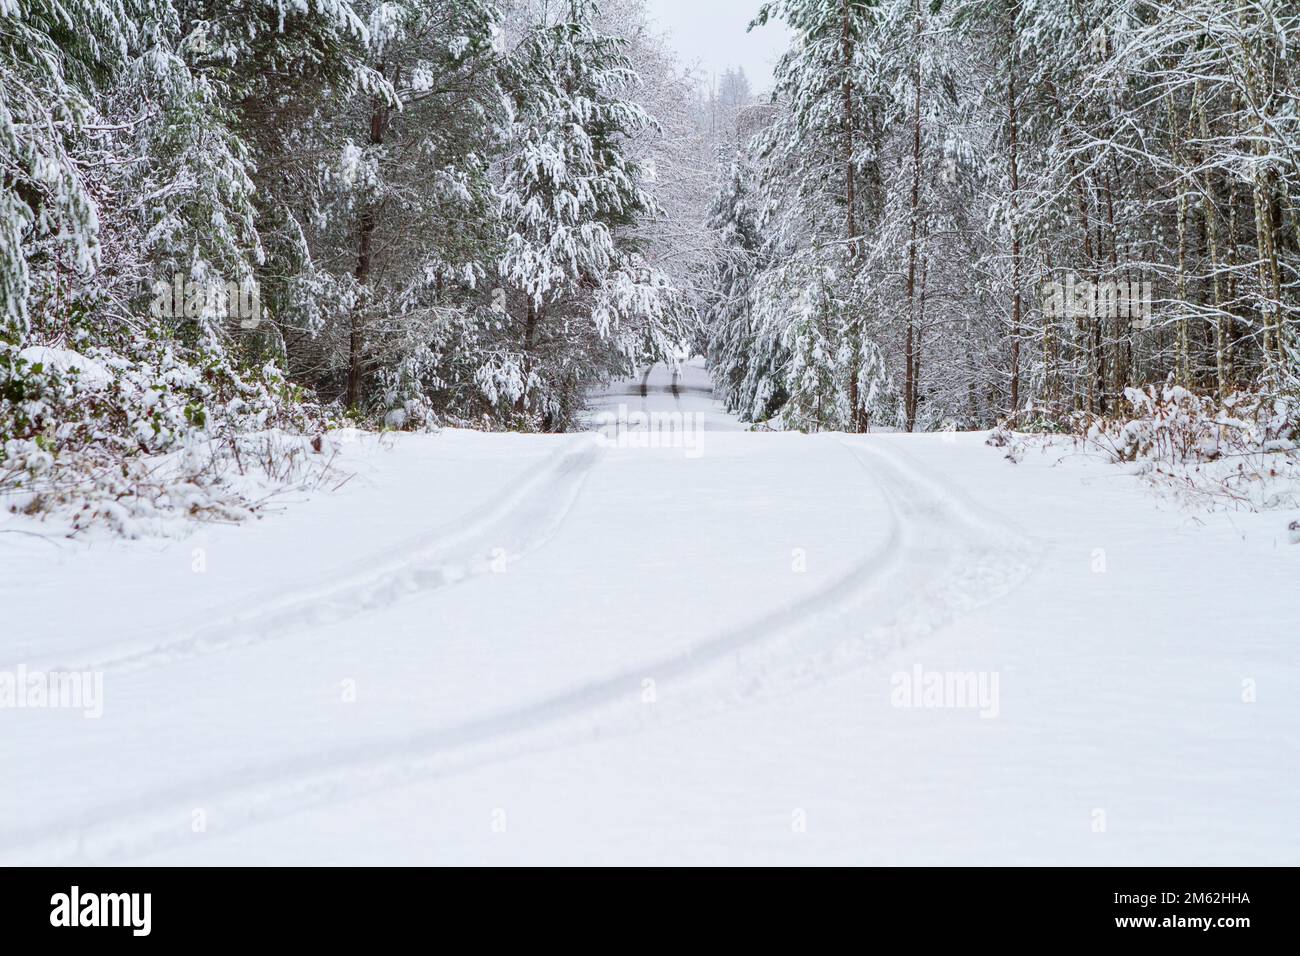 Reifenspuren von einem einzelnen Fahrzeug im Schnee, die im Winter auf einer einsamen Landstraße wegführen. Stockfoto